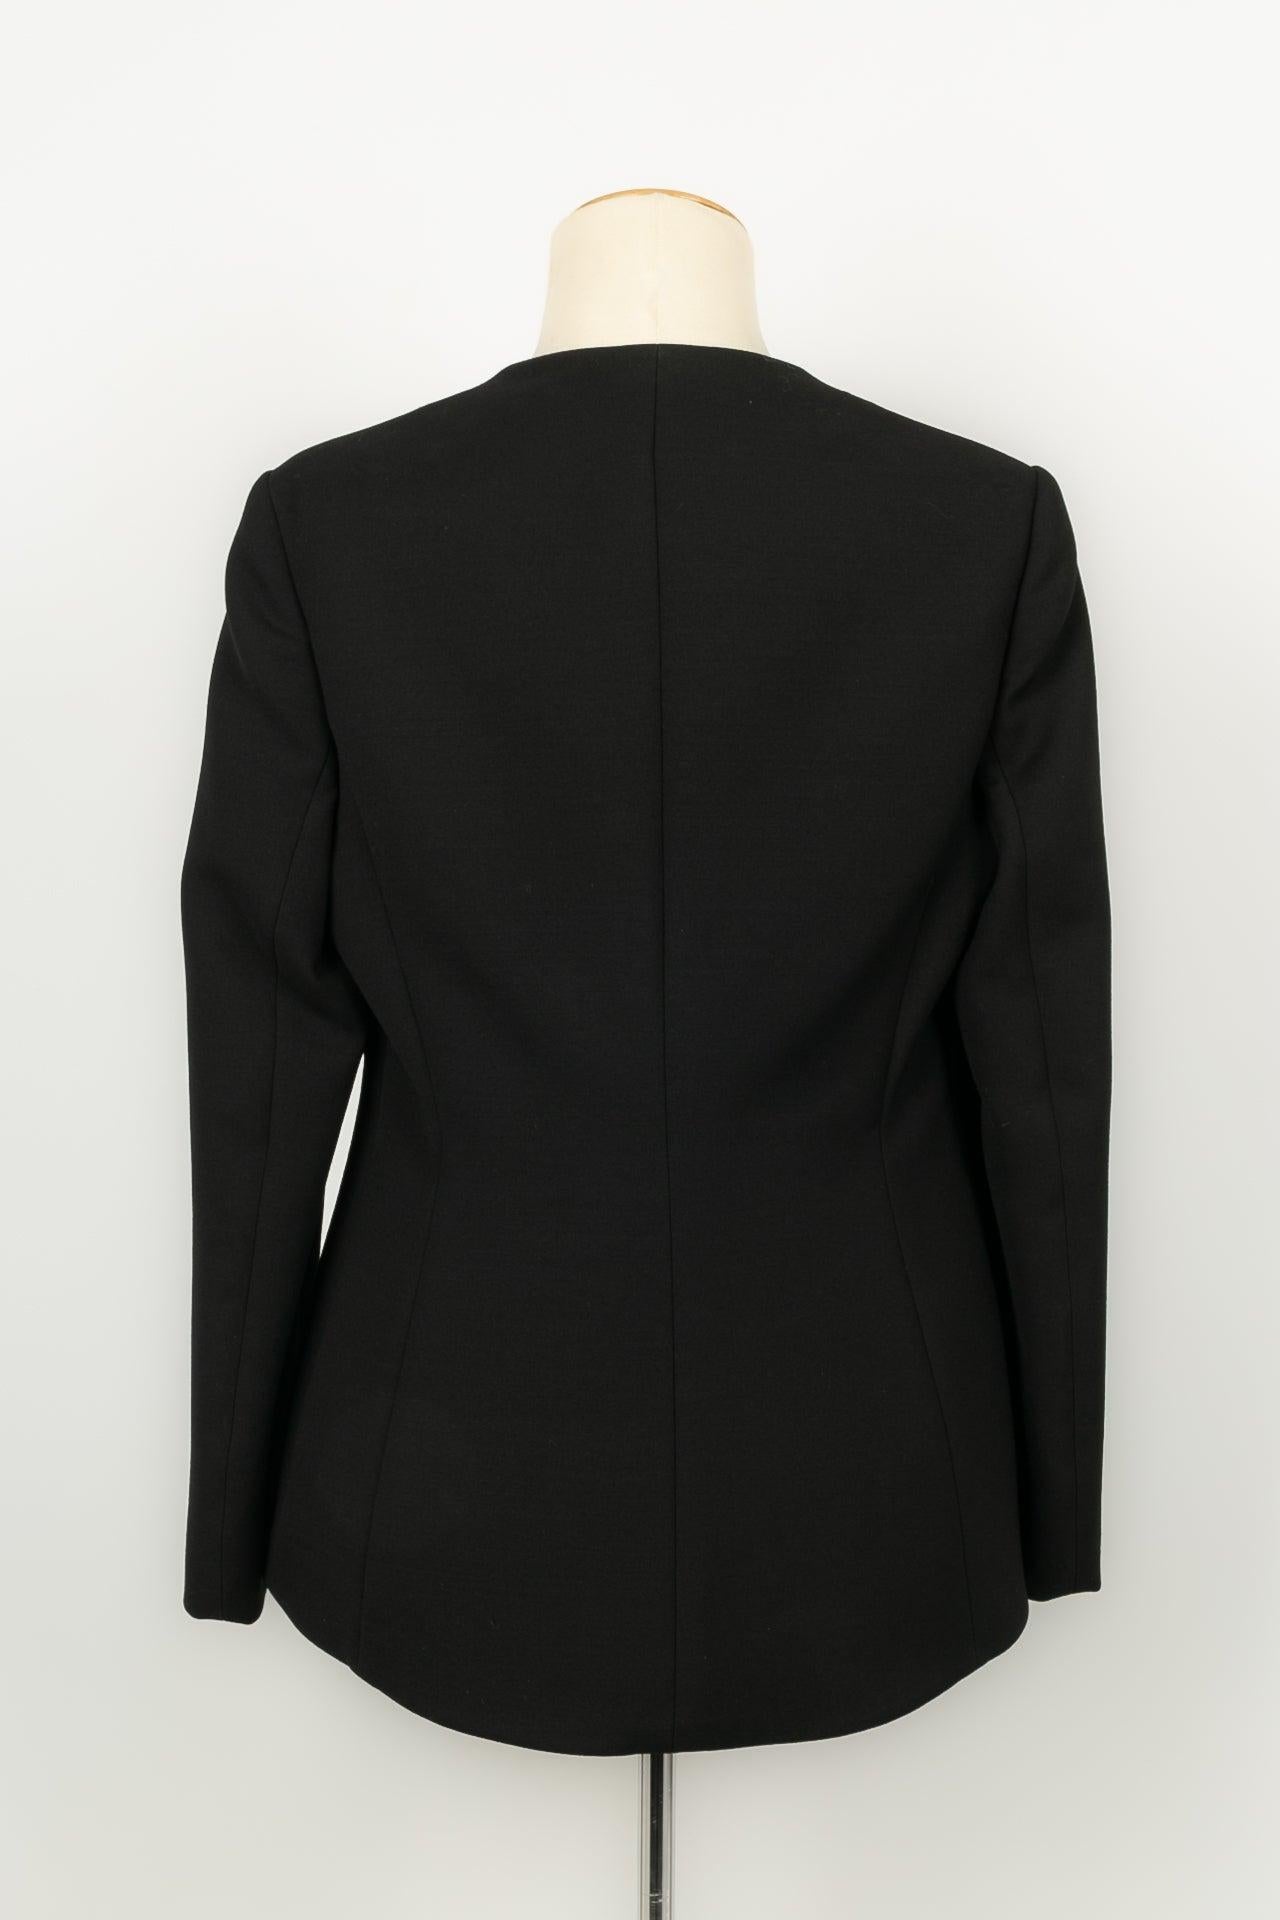 Dior Jacket in Black Wool In Excellent Condition For Sale In SAINT-OUEN-SUR-SEINE, FR